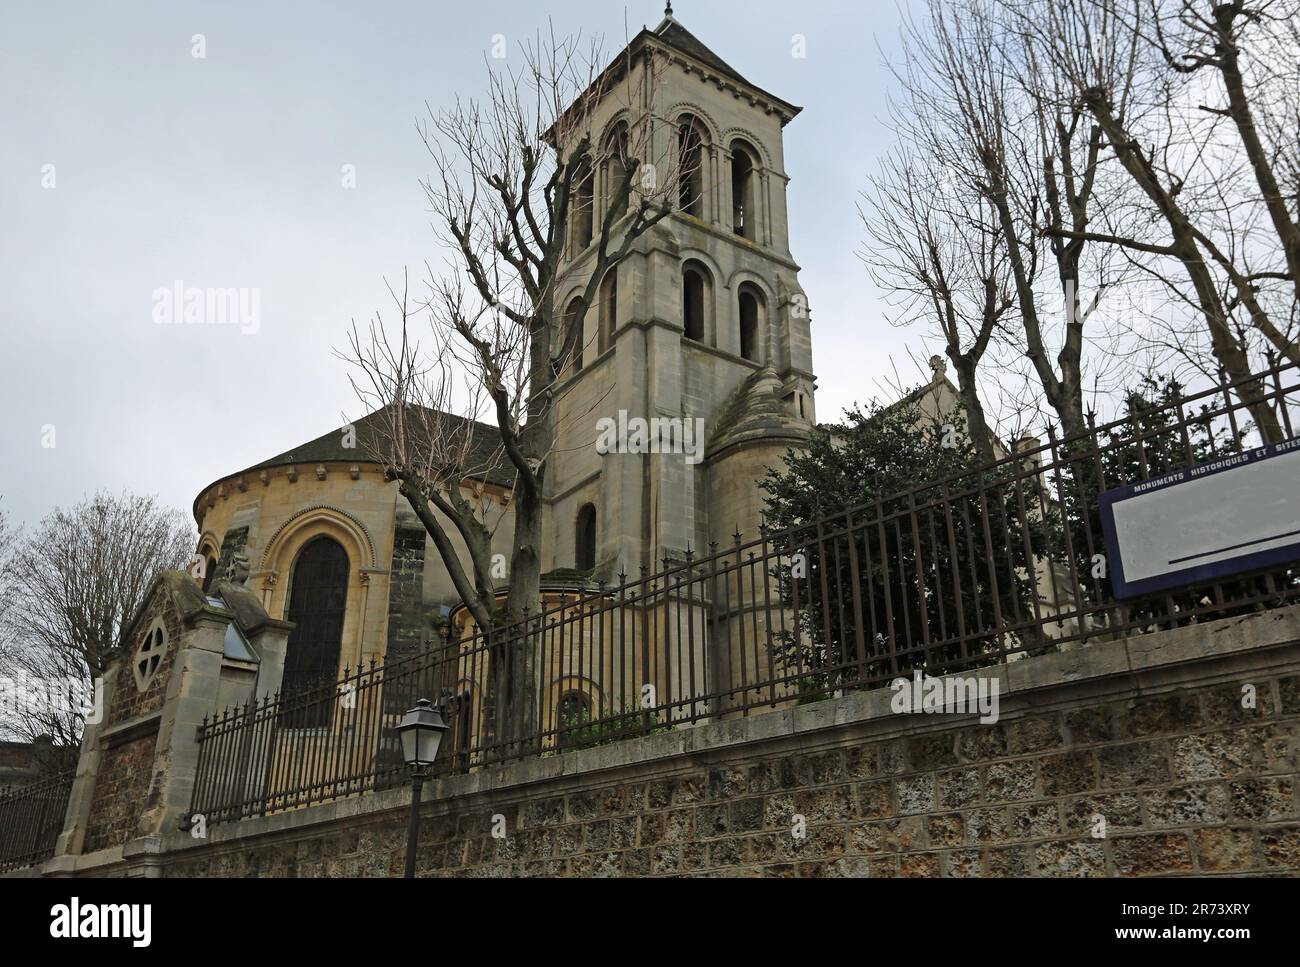 Landscape with Sacre-Coeur Basilica - Paris, France Stock Photo